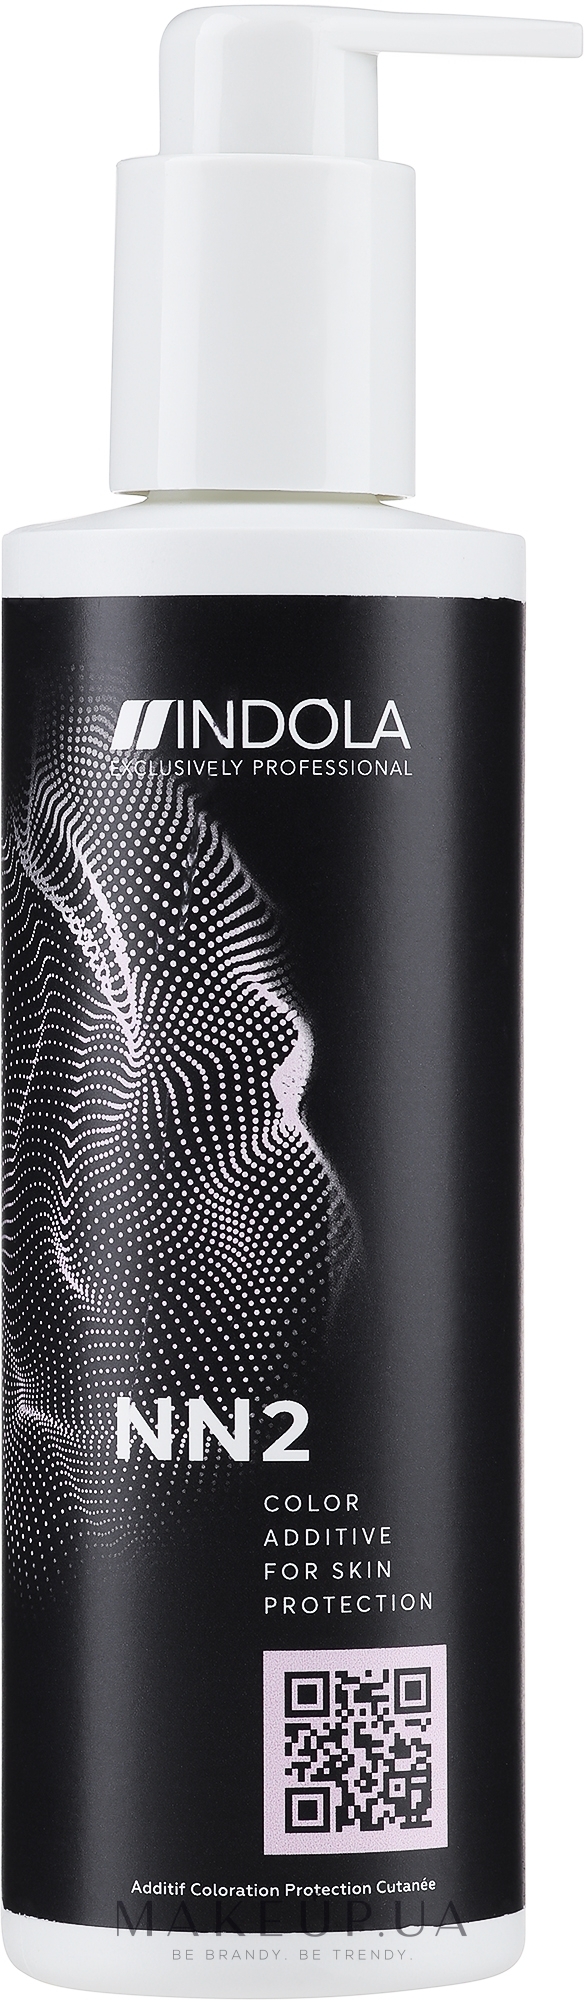 Лосьйон для захисту шкіри голови при фарбуванні - Indola Profession NN2 Additive Color Skin Protector — фото 250ml